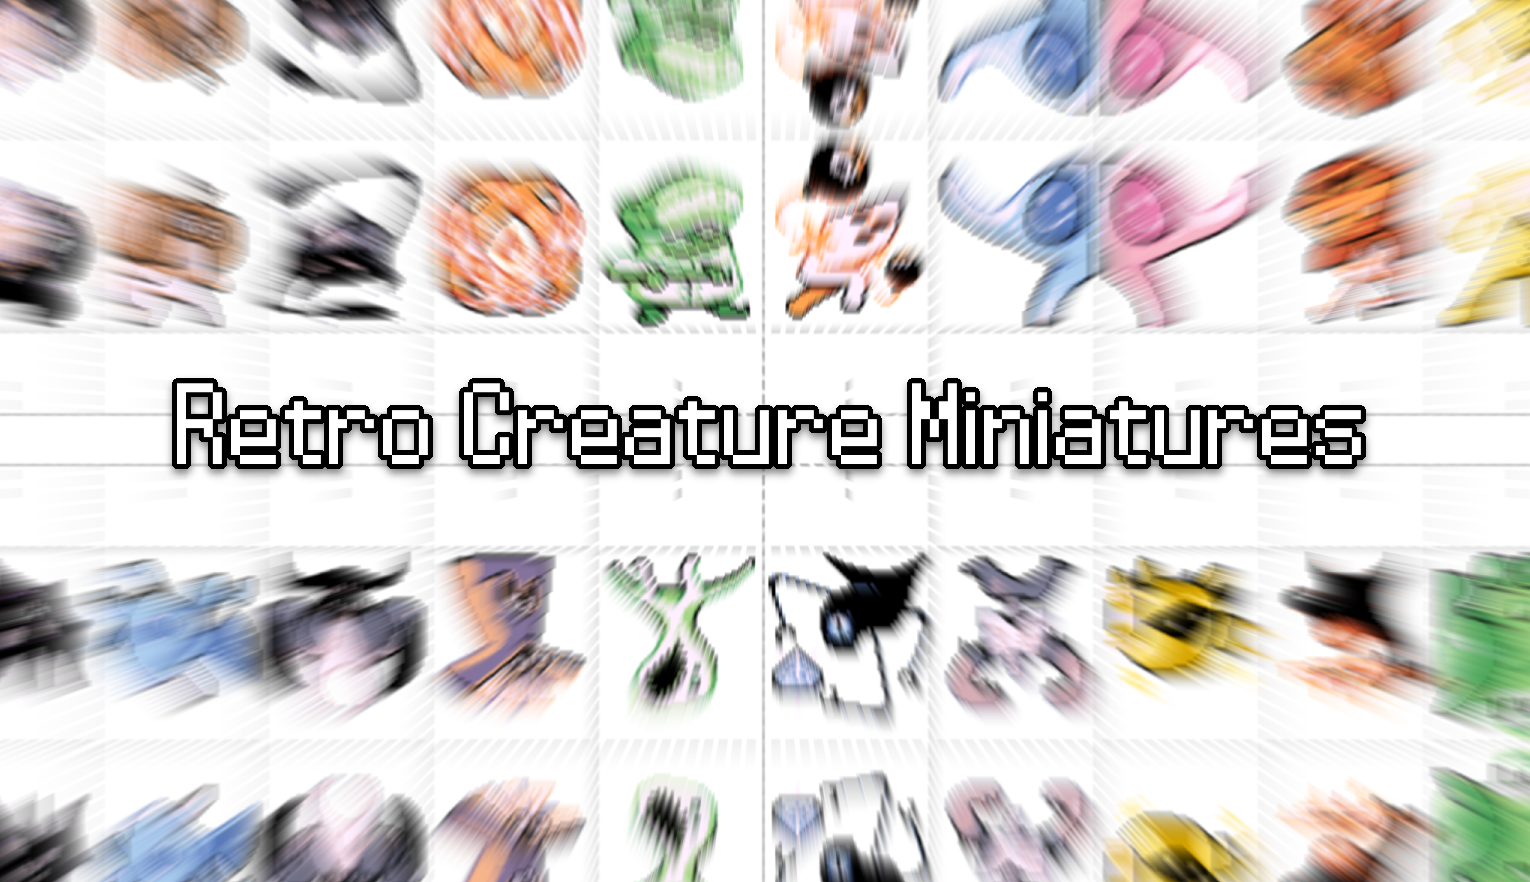 Retro Creature Miniatures